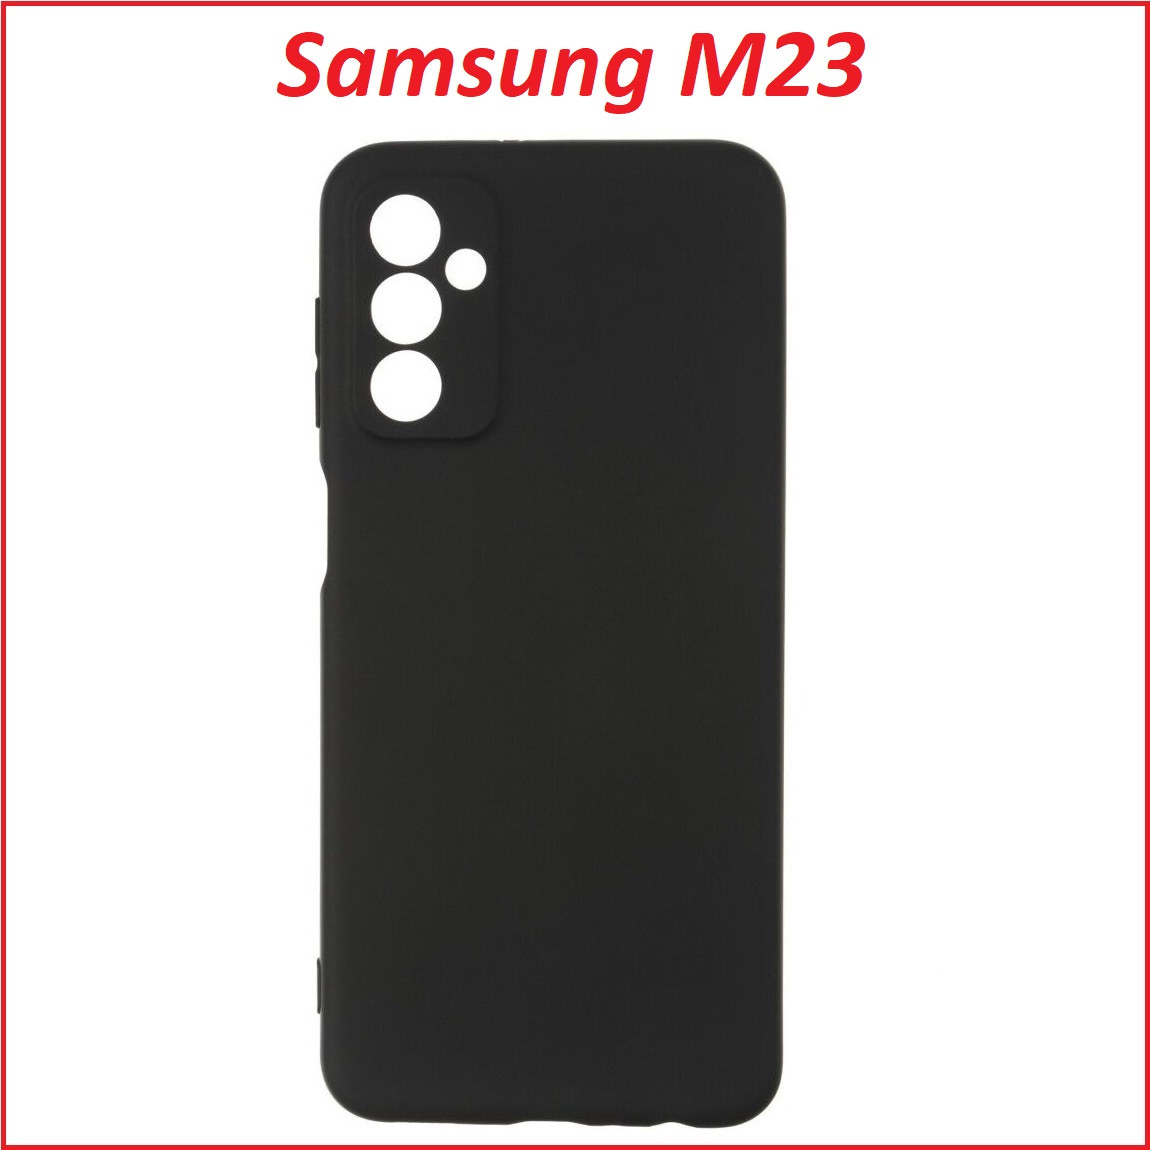 Чехол-накладка для Samsung Galaxy M23 SM-M236 (силикон) черный с защитой камеры